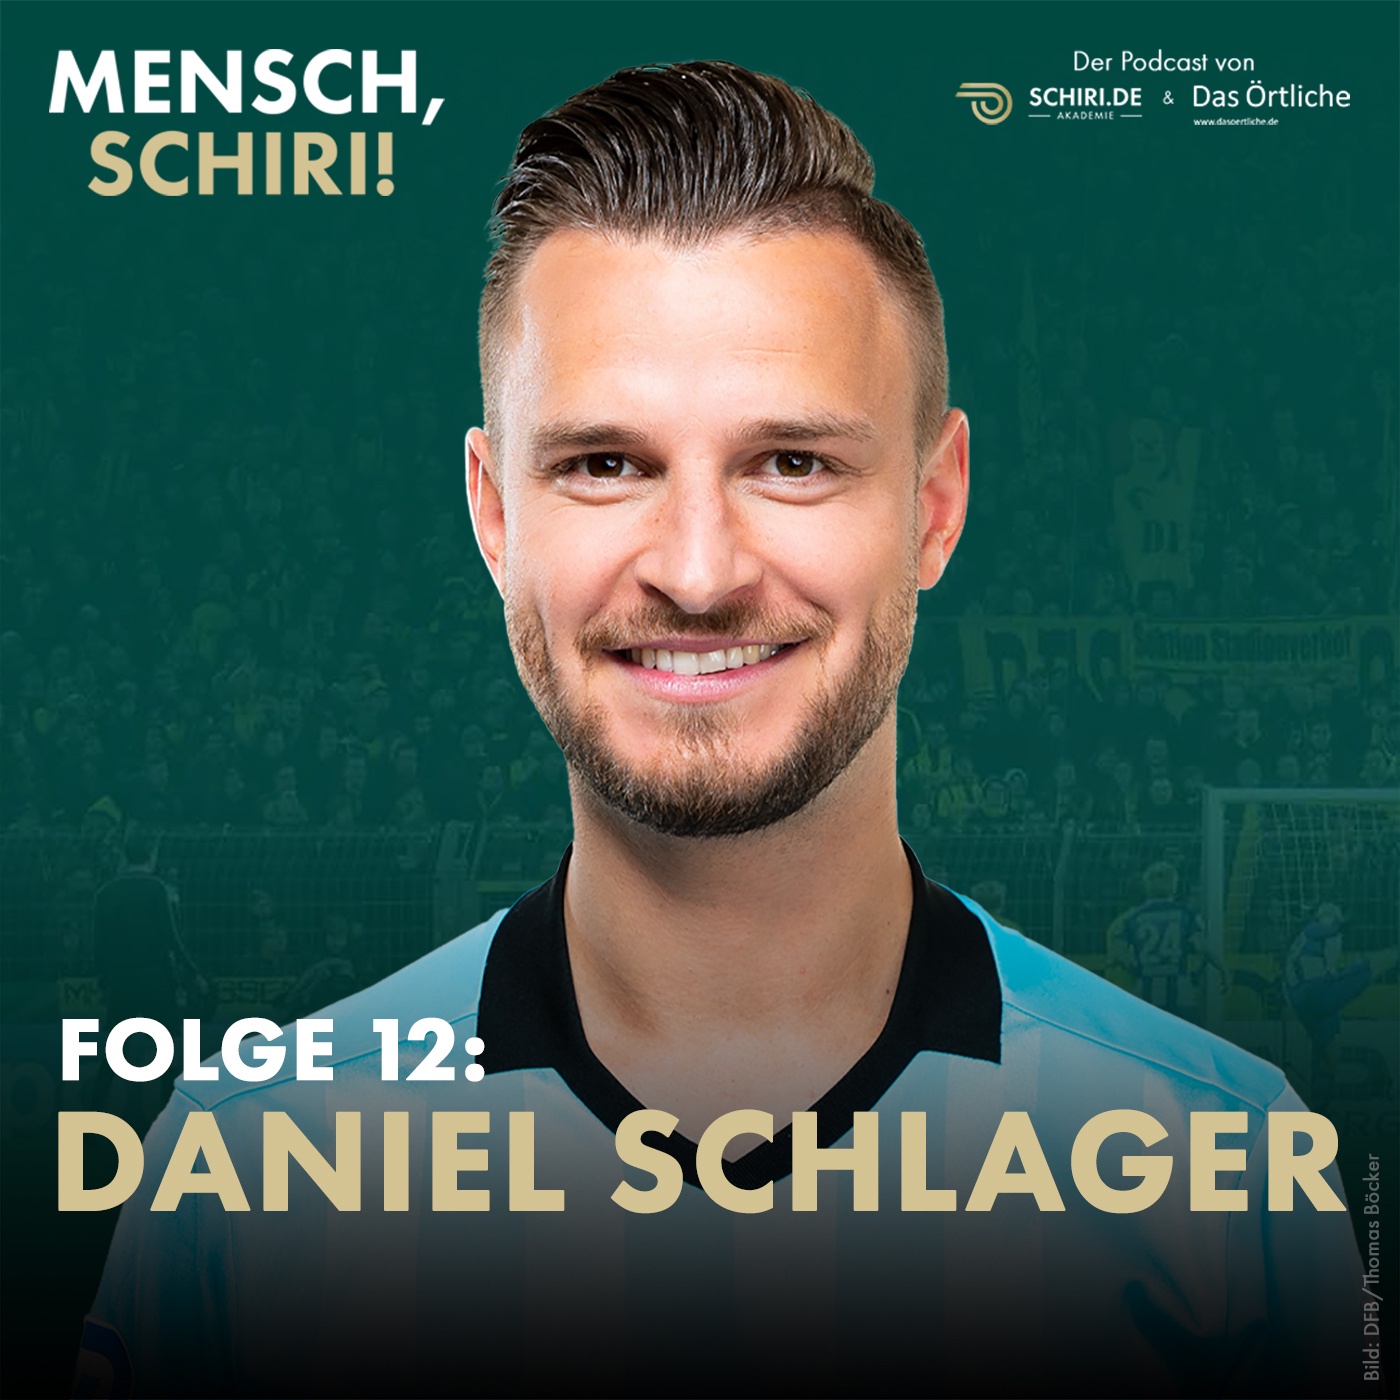 Daniel Schlager